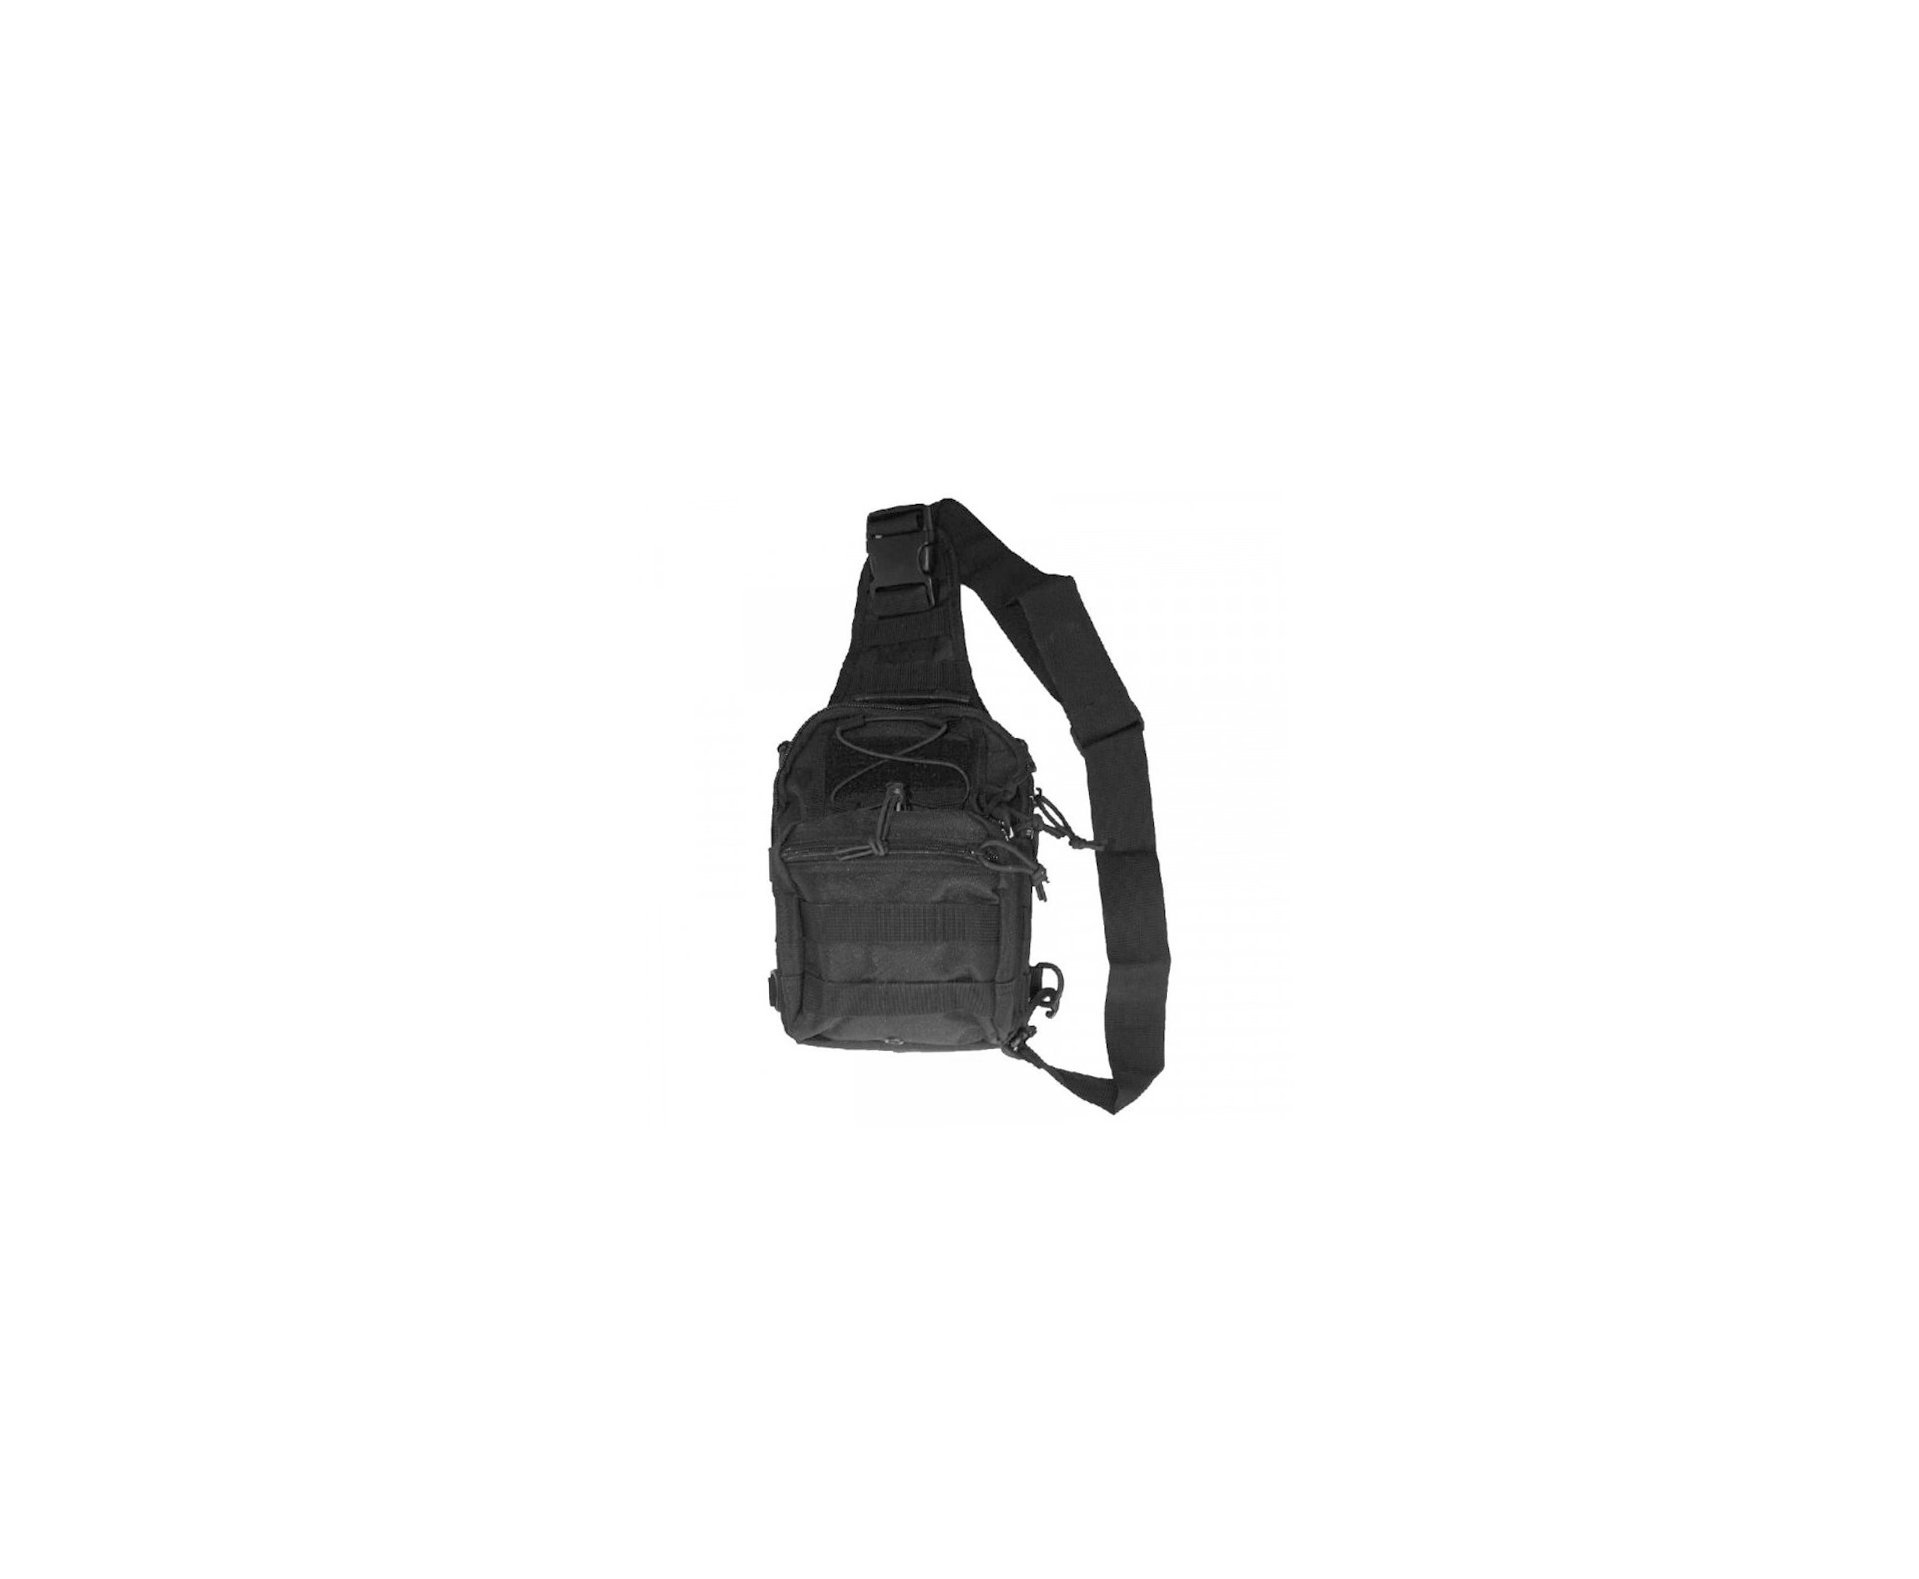 Bolsa Tática Pentagon Ucb Shoulder Bag - Black - Evo Tactical